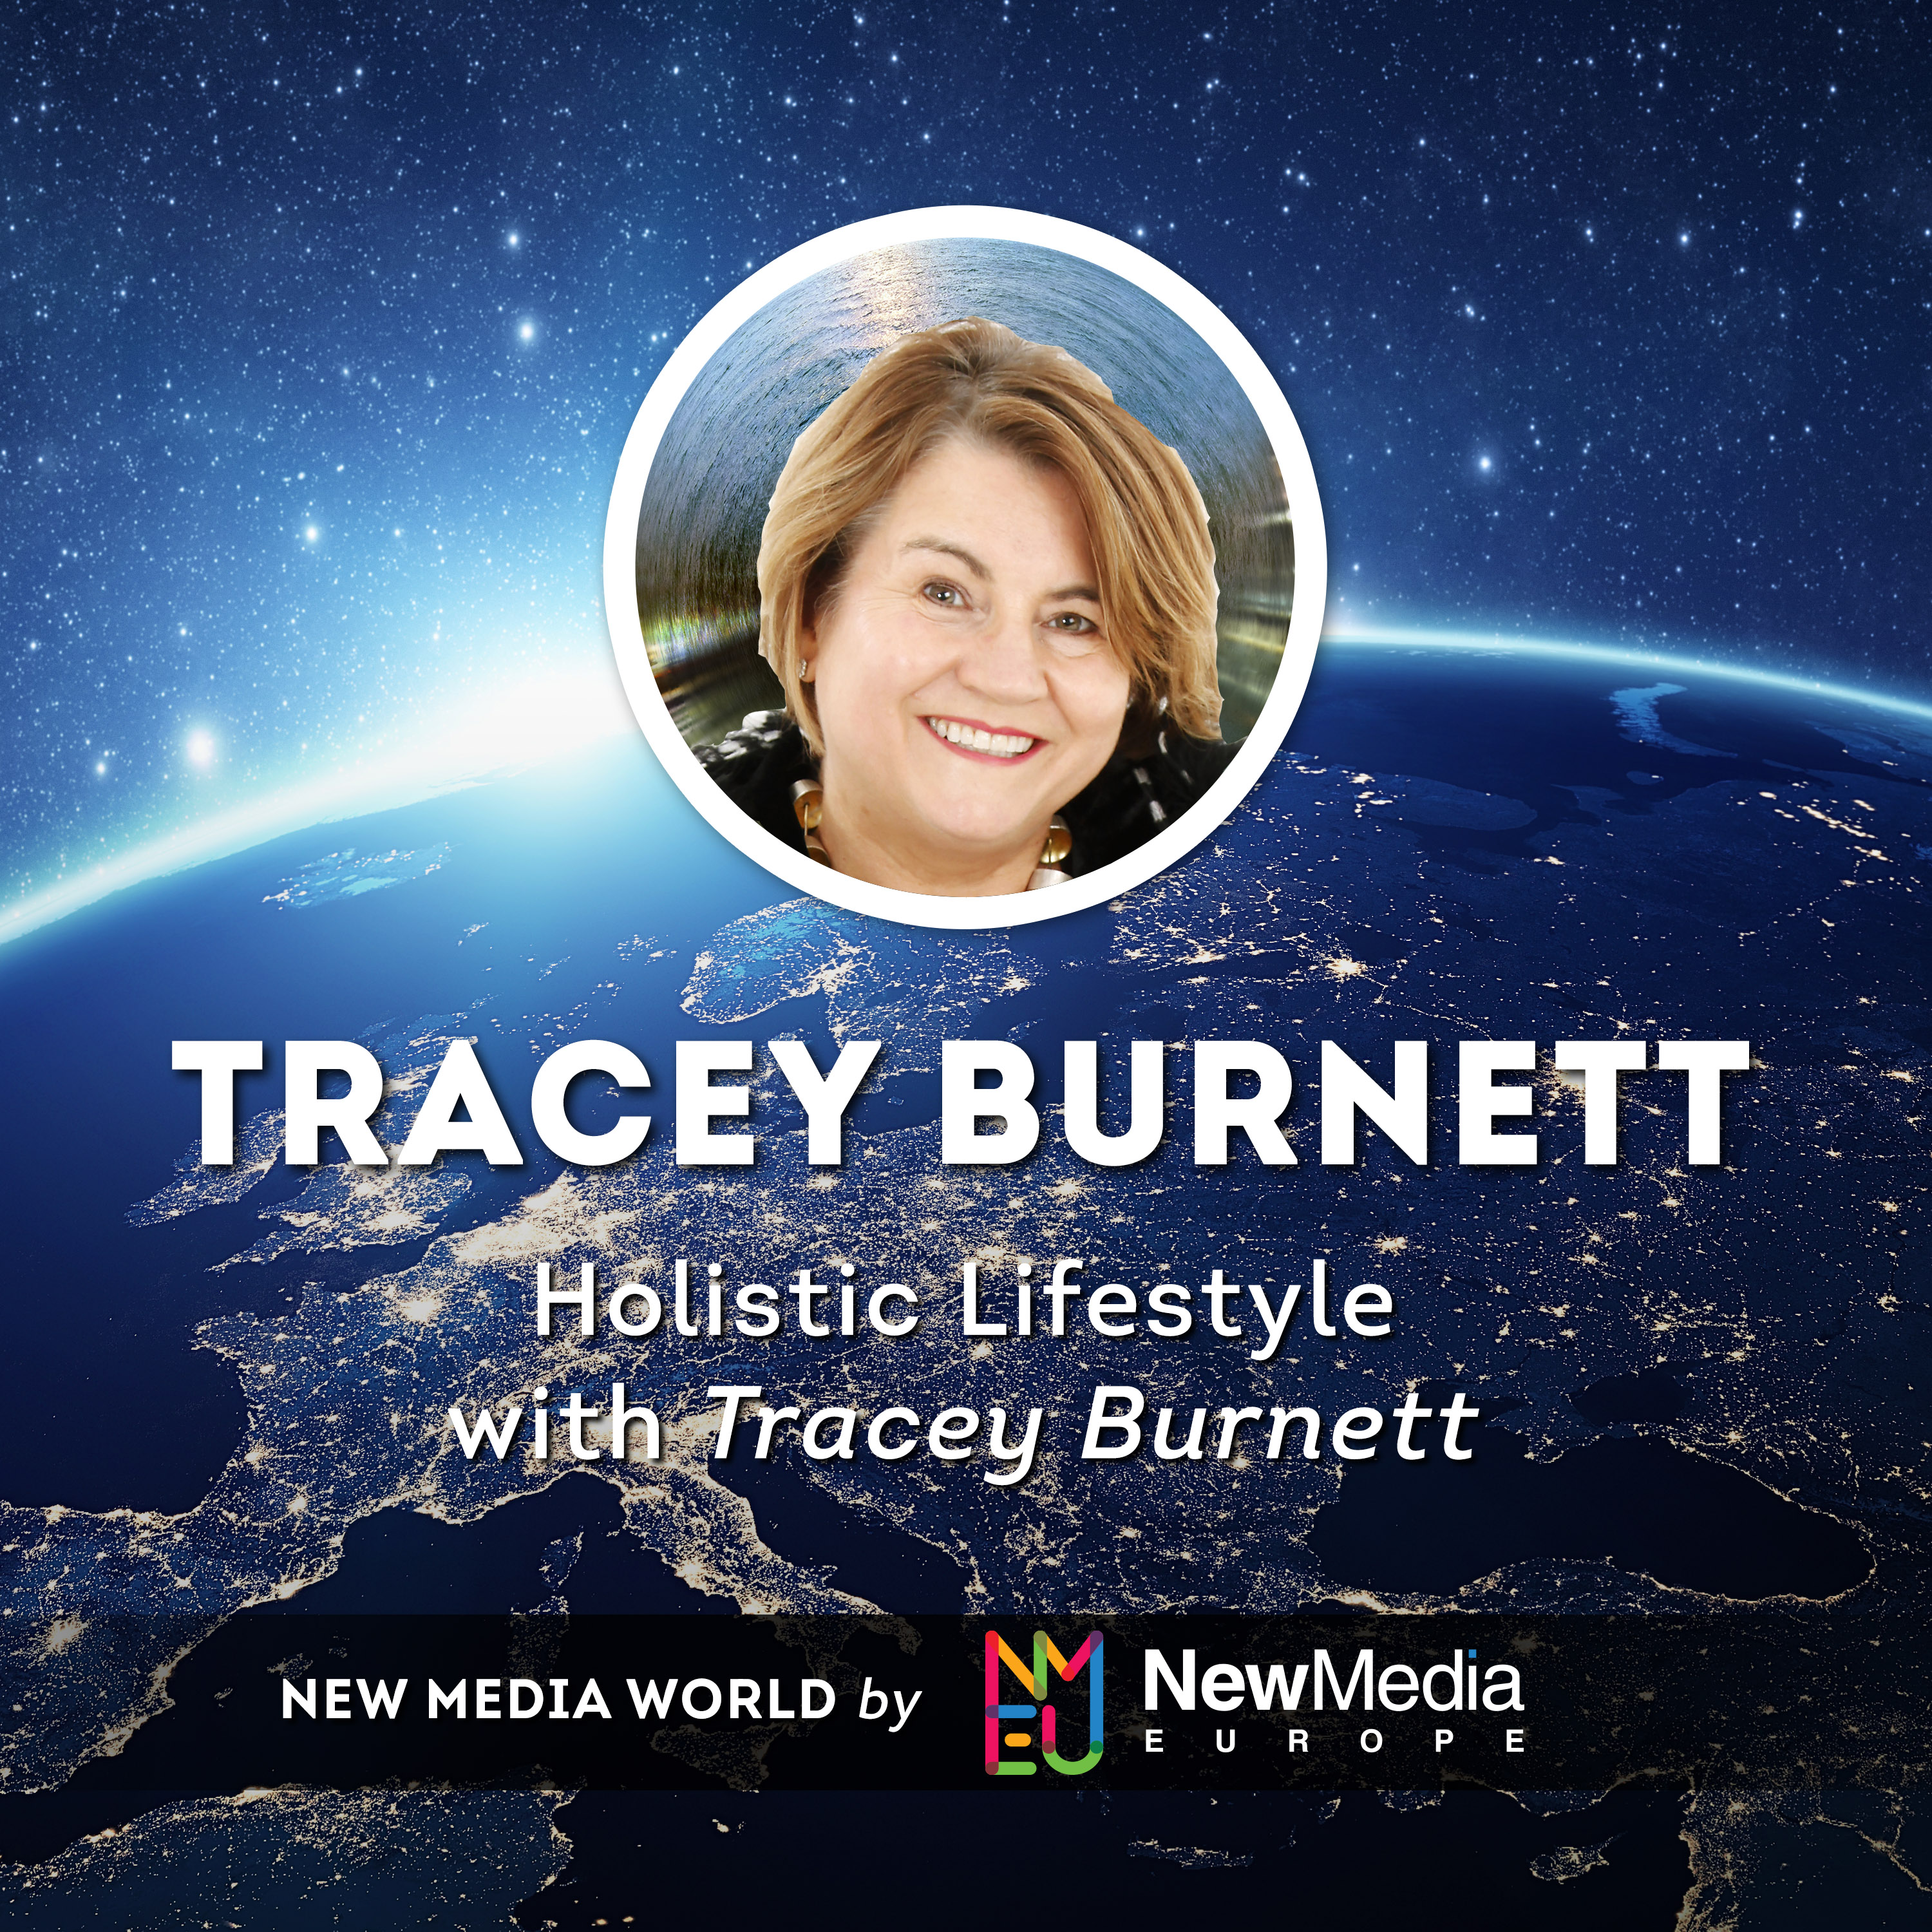 Tracey Burnett